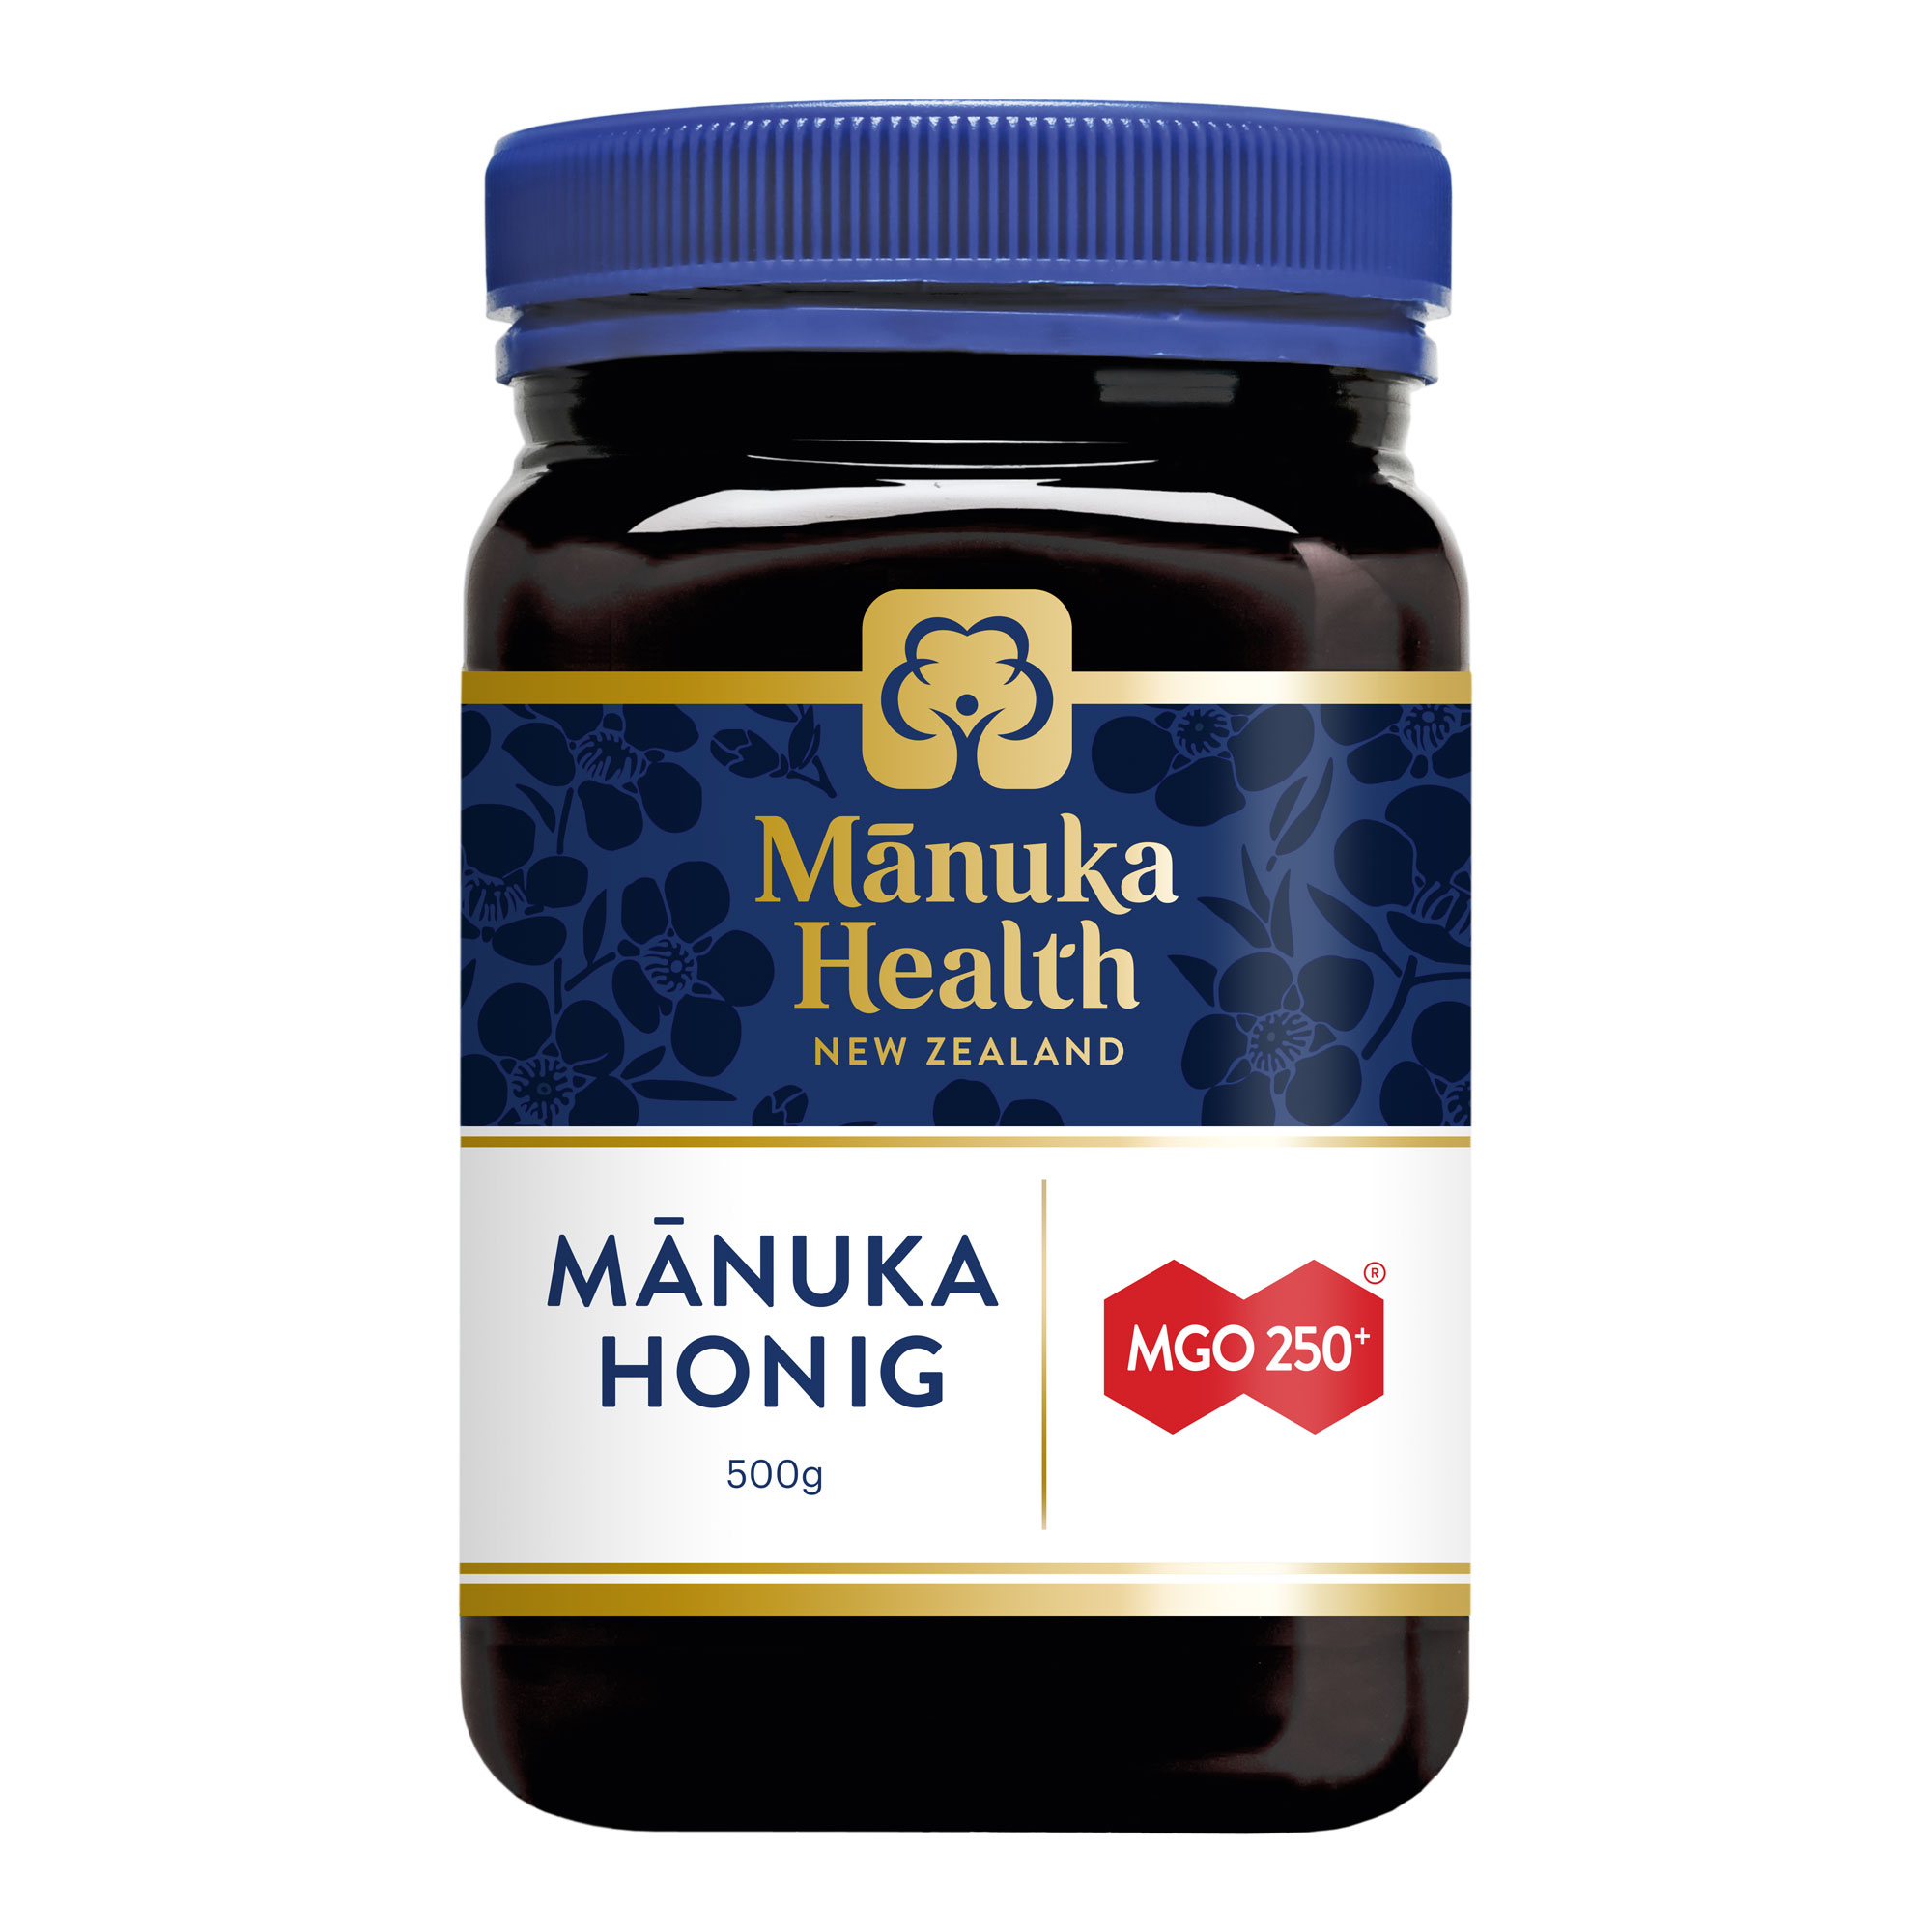 Manuka Honig zur Stärkung des allgemeinen Wohlbefindens. Mit Gehalt von mindestens 250 mg MGO.